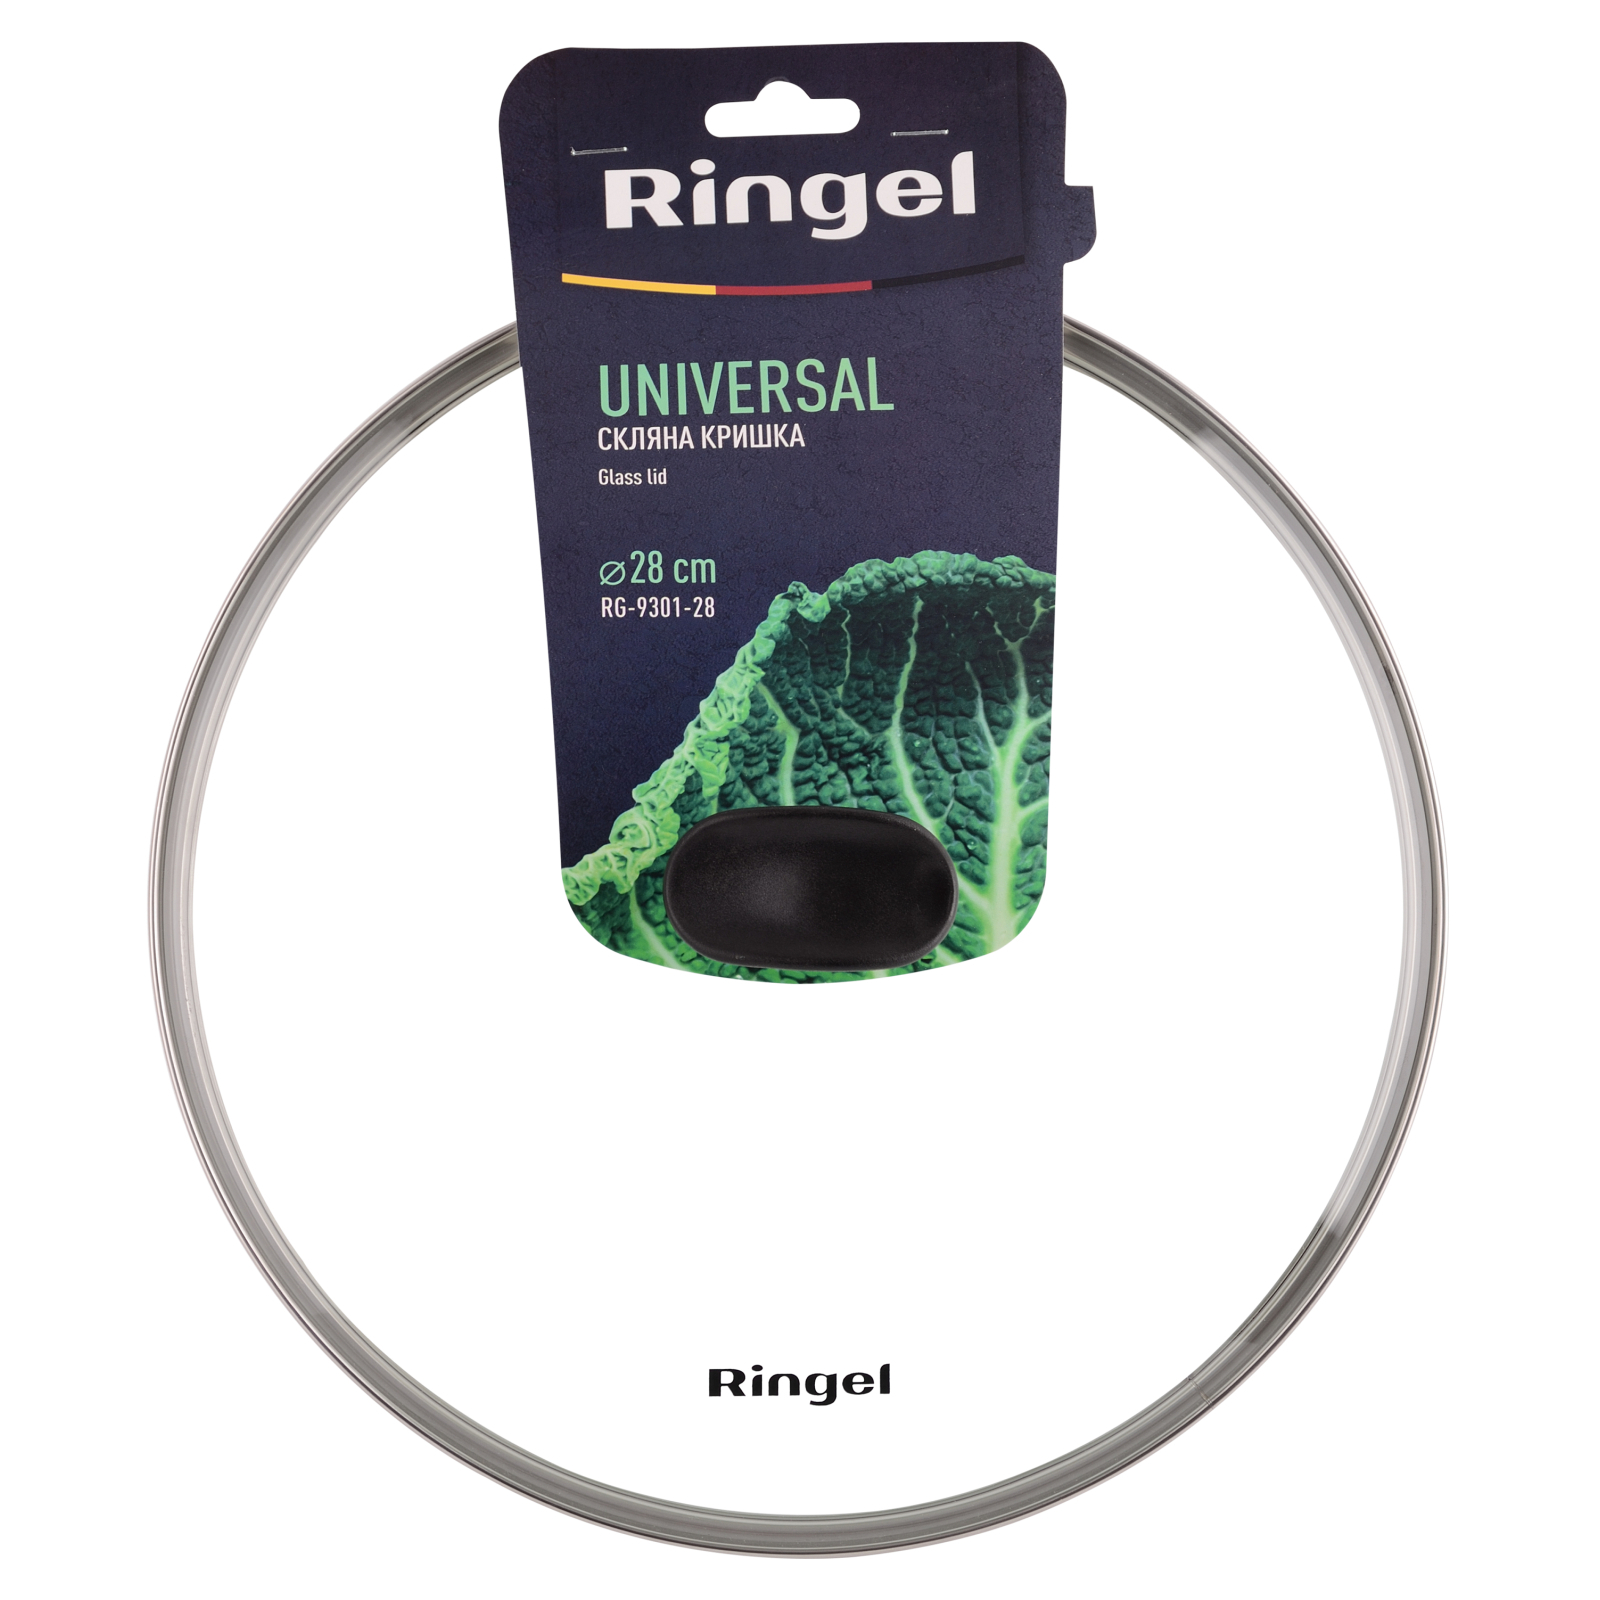 Крышка для посуды Ringel Universal 24 см (RG-9301-24) изображение 4